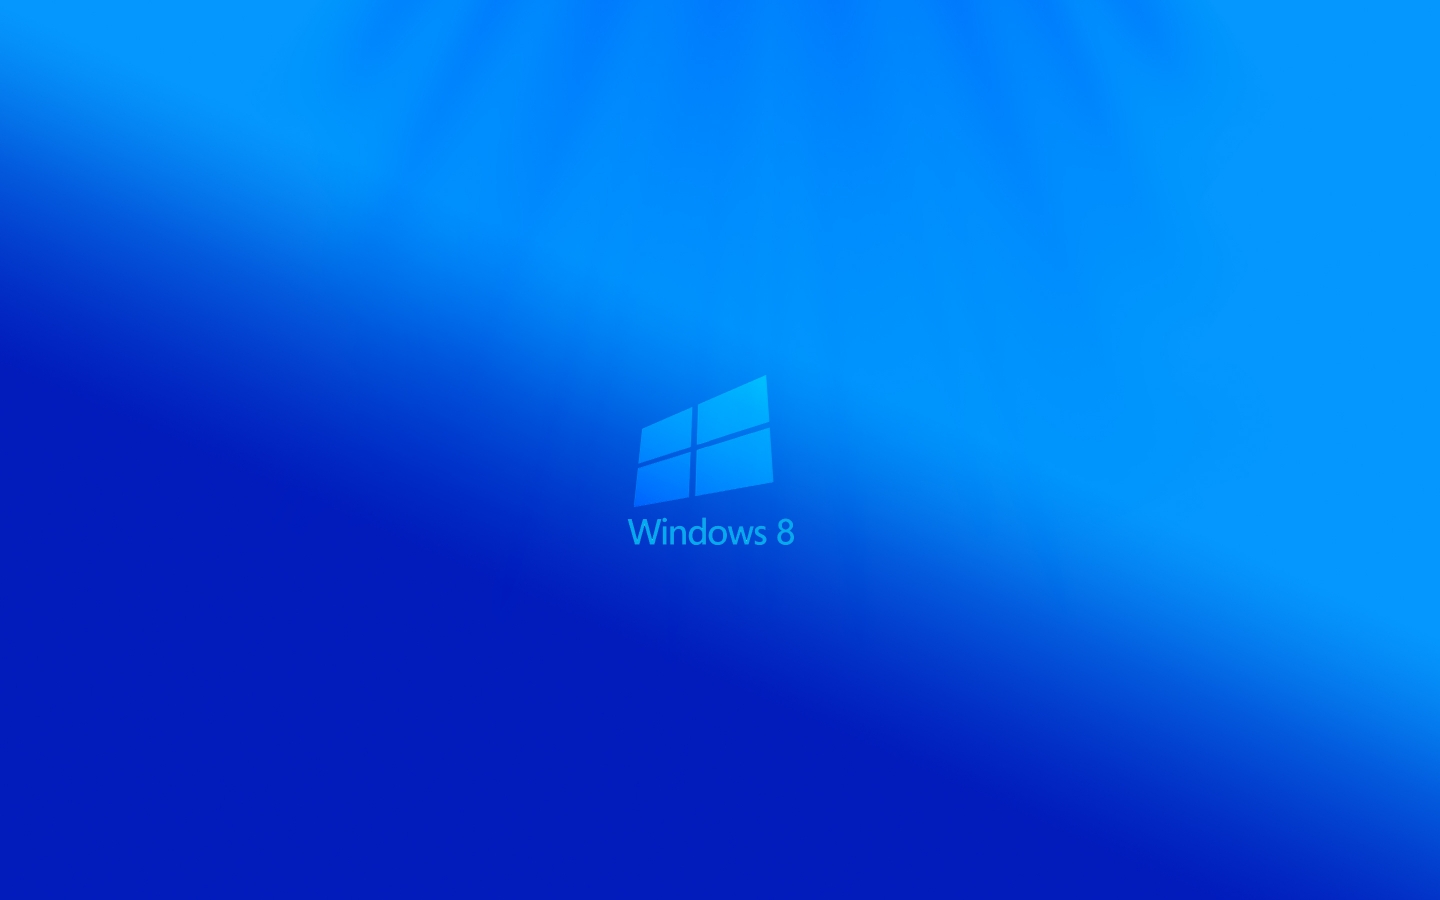 Windows 8 Light for 1440 x 900 widescreen resolution